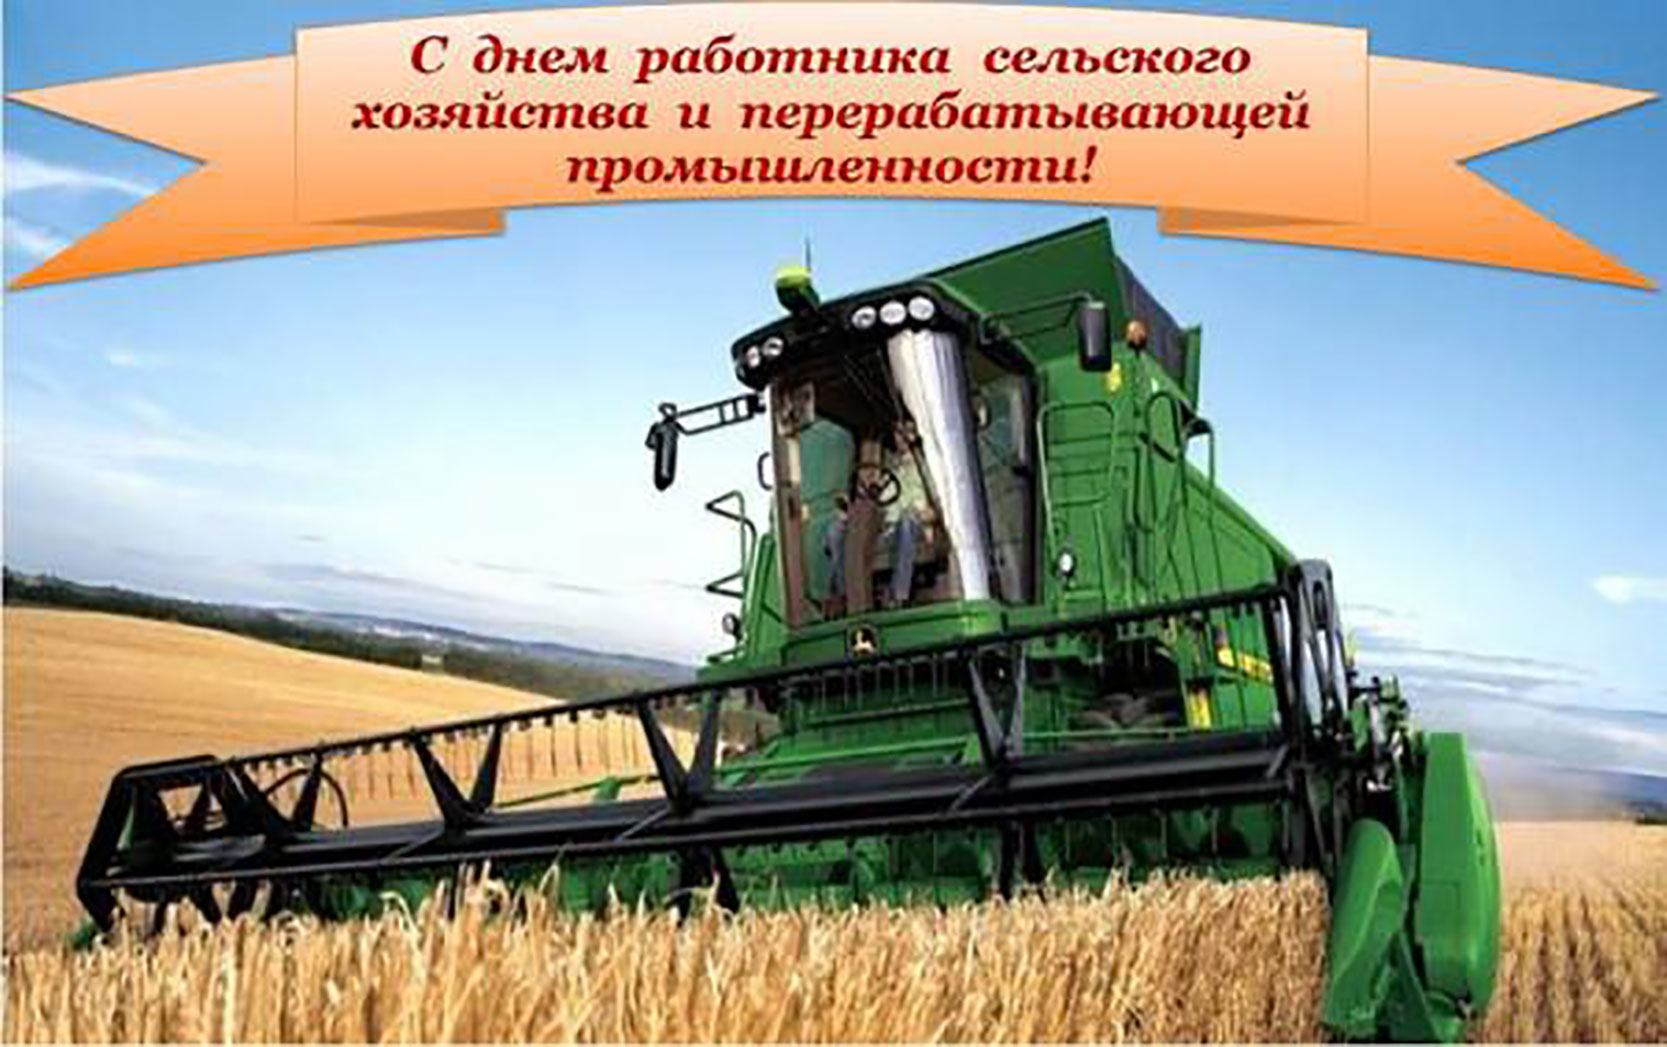 Открытка ко дню сельского хозяйства день празднования тяжелого труда наших сельскохозяйственных работников!